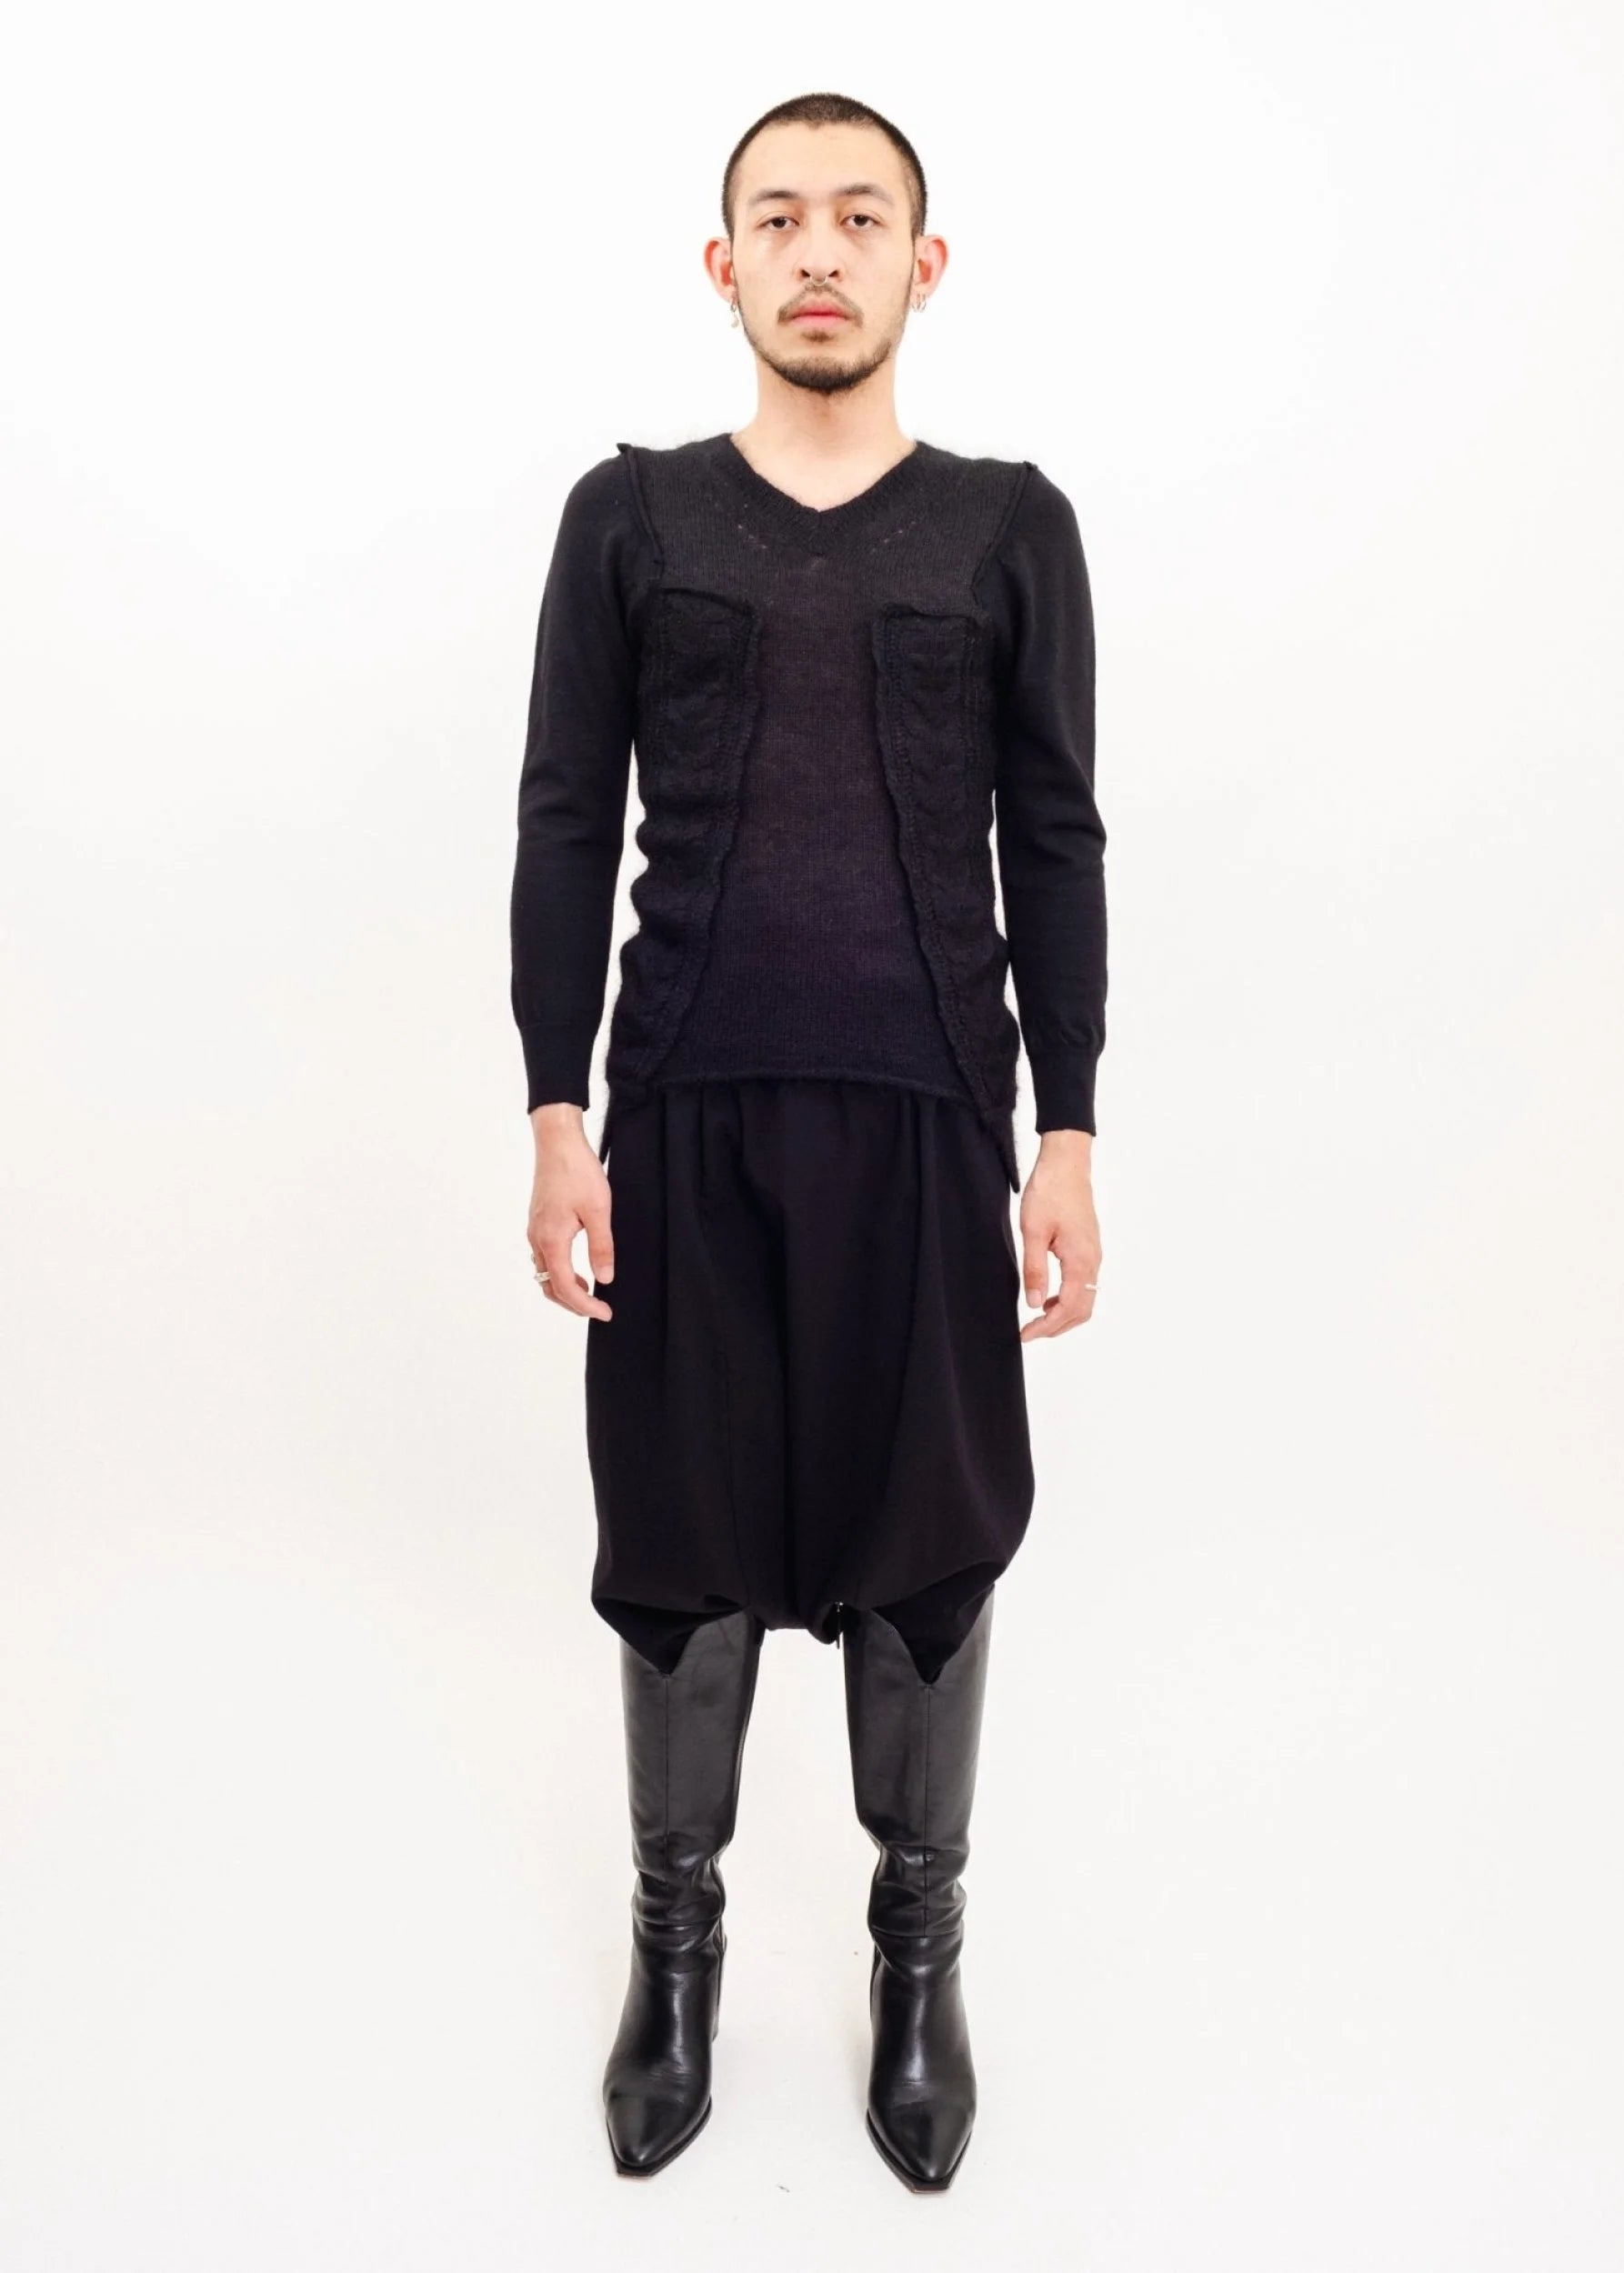 Junya Watanabe Comme des Garçons “Upside down” wool/ silk